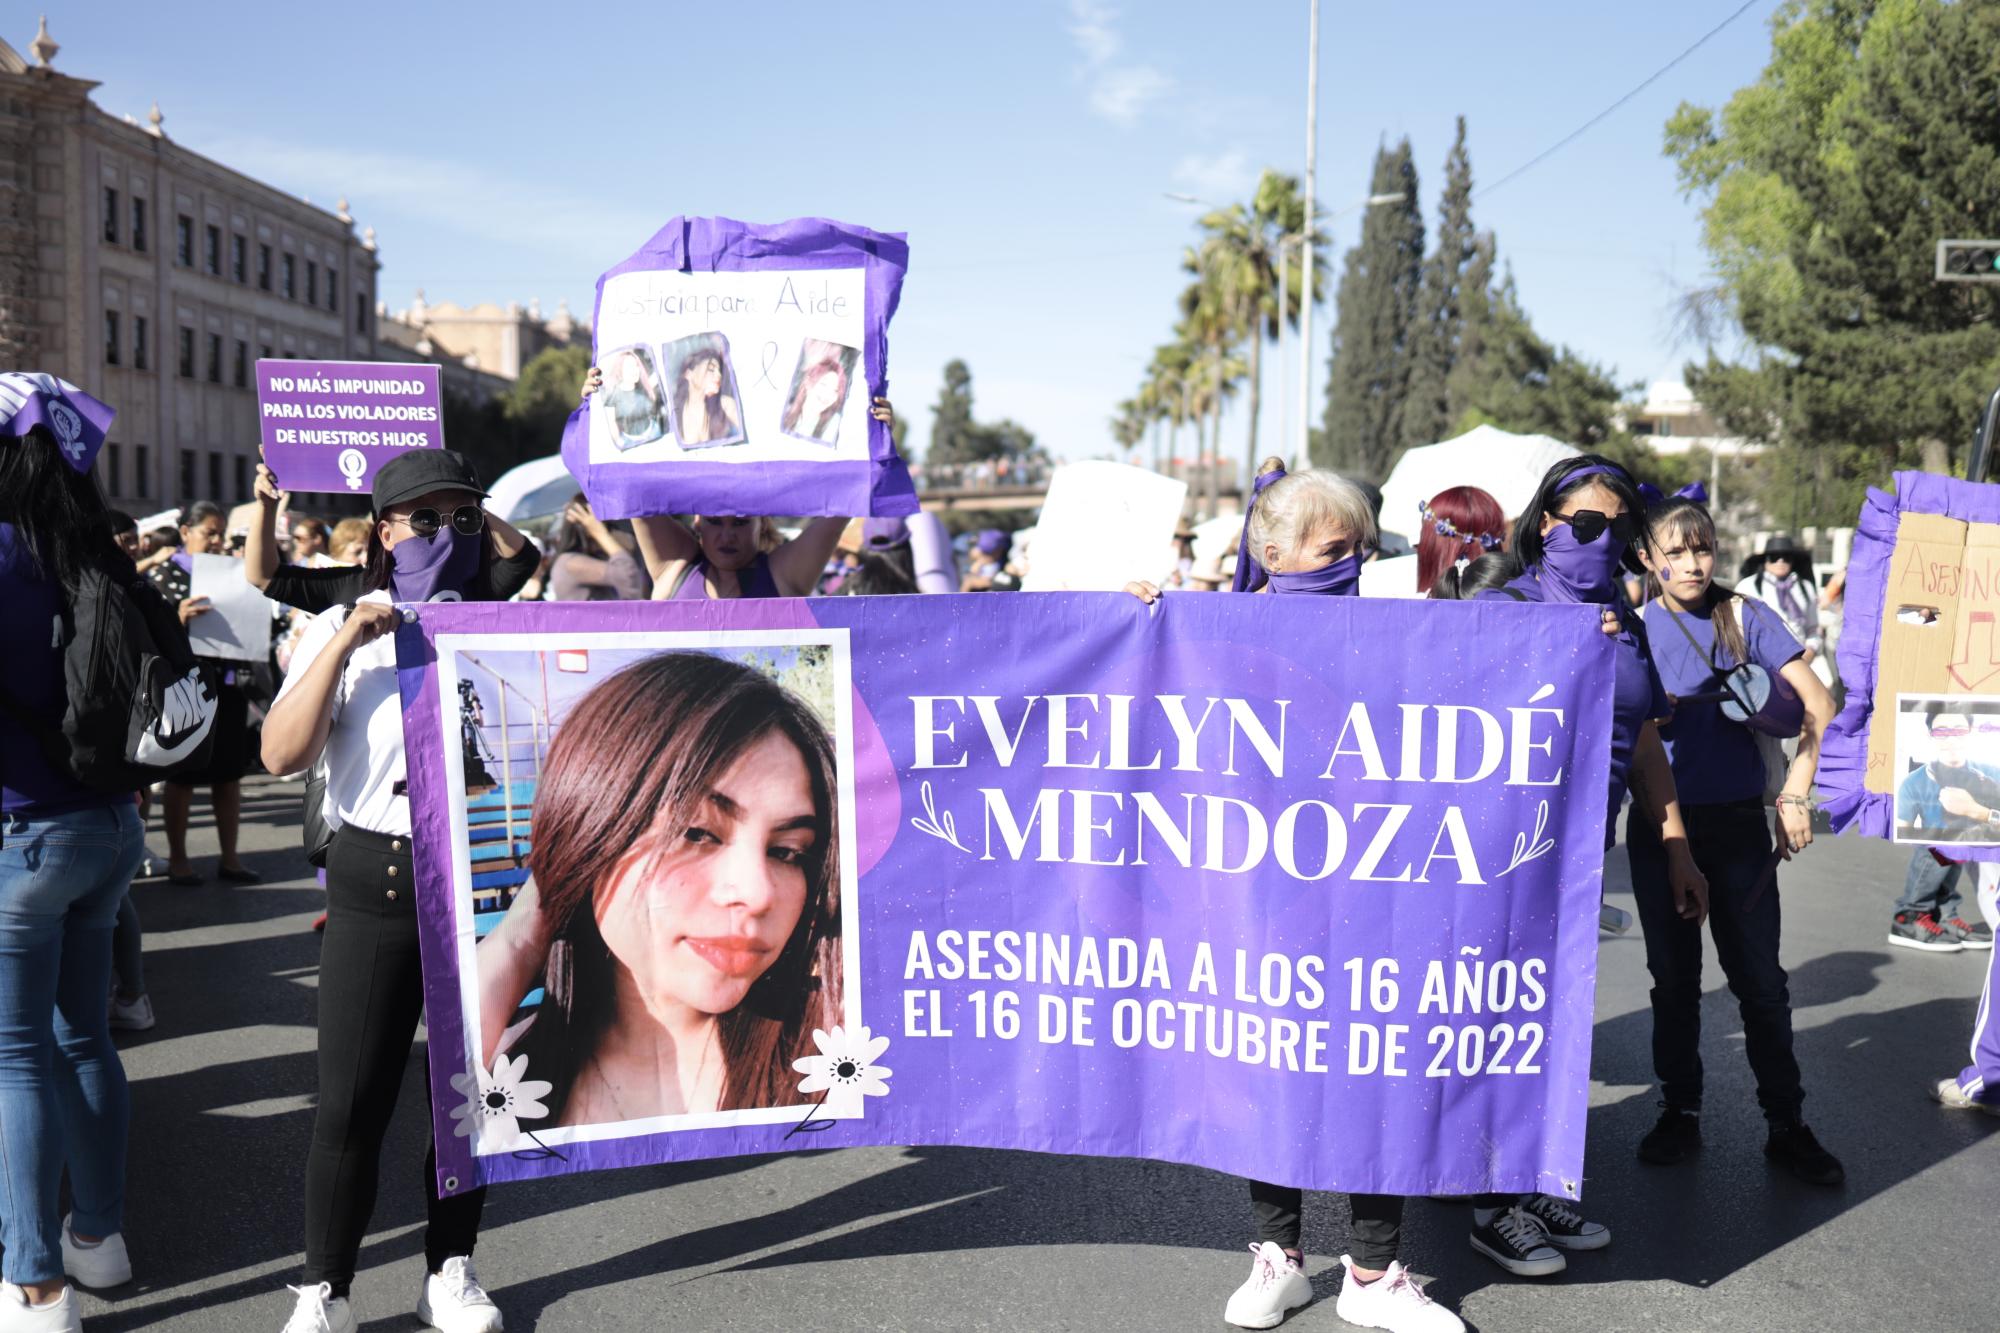 $!Numersas pancartas exhibían a víctimas de feminicidas.